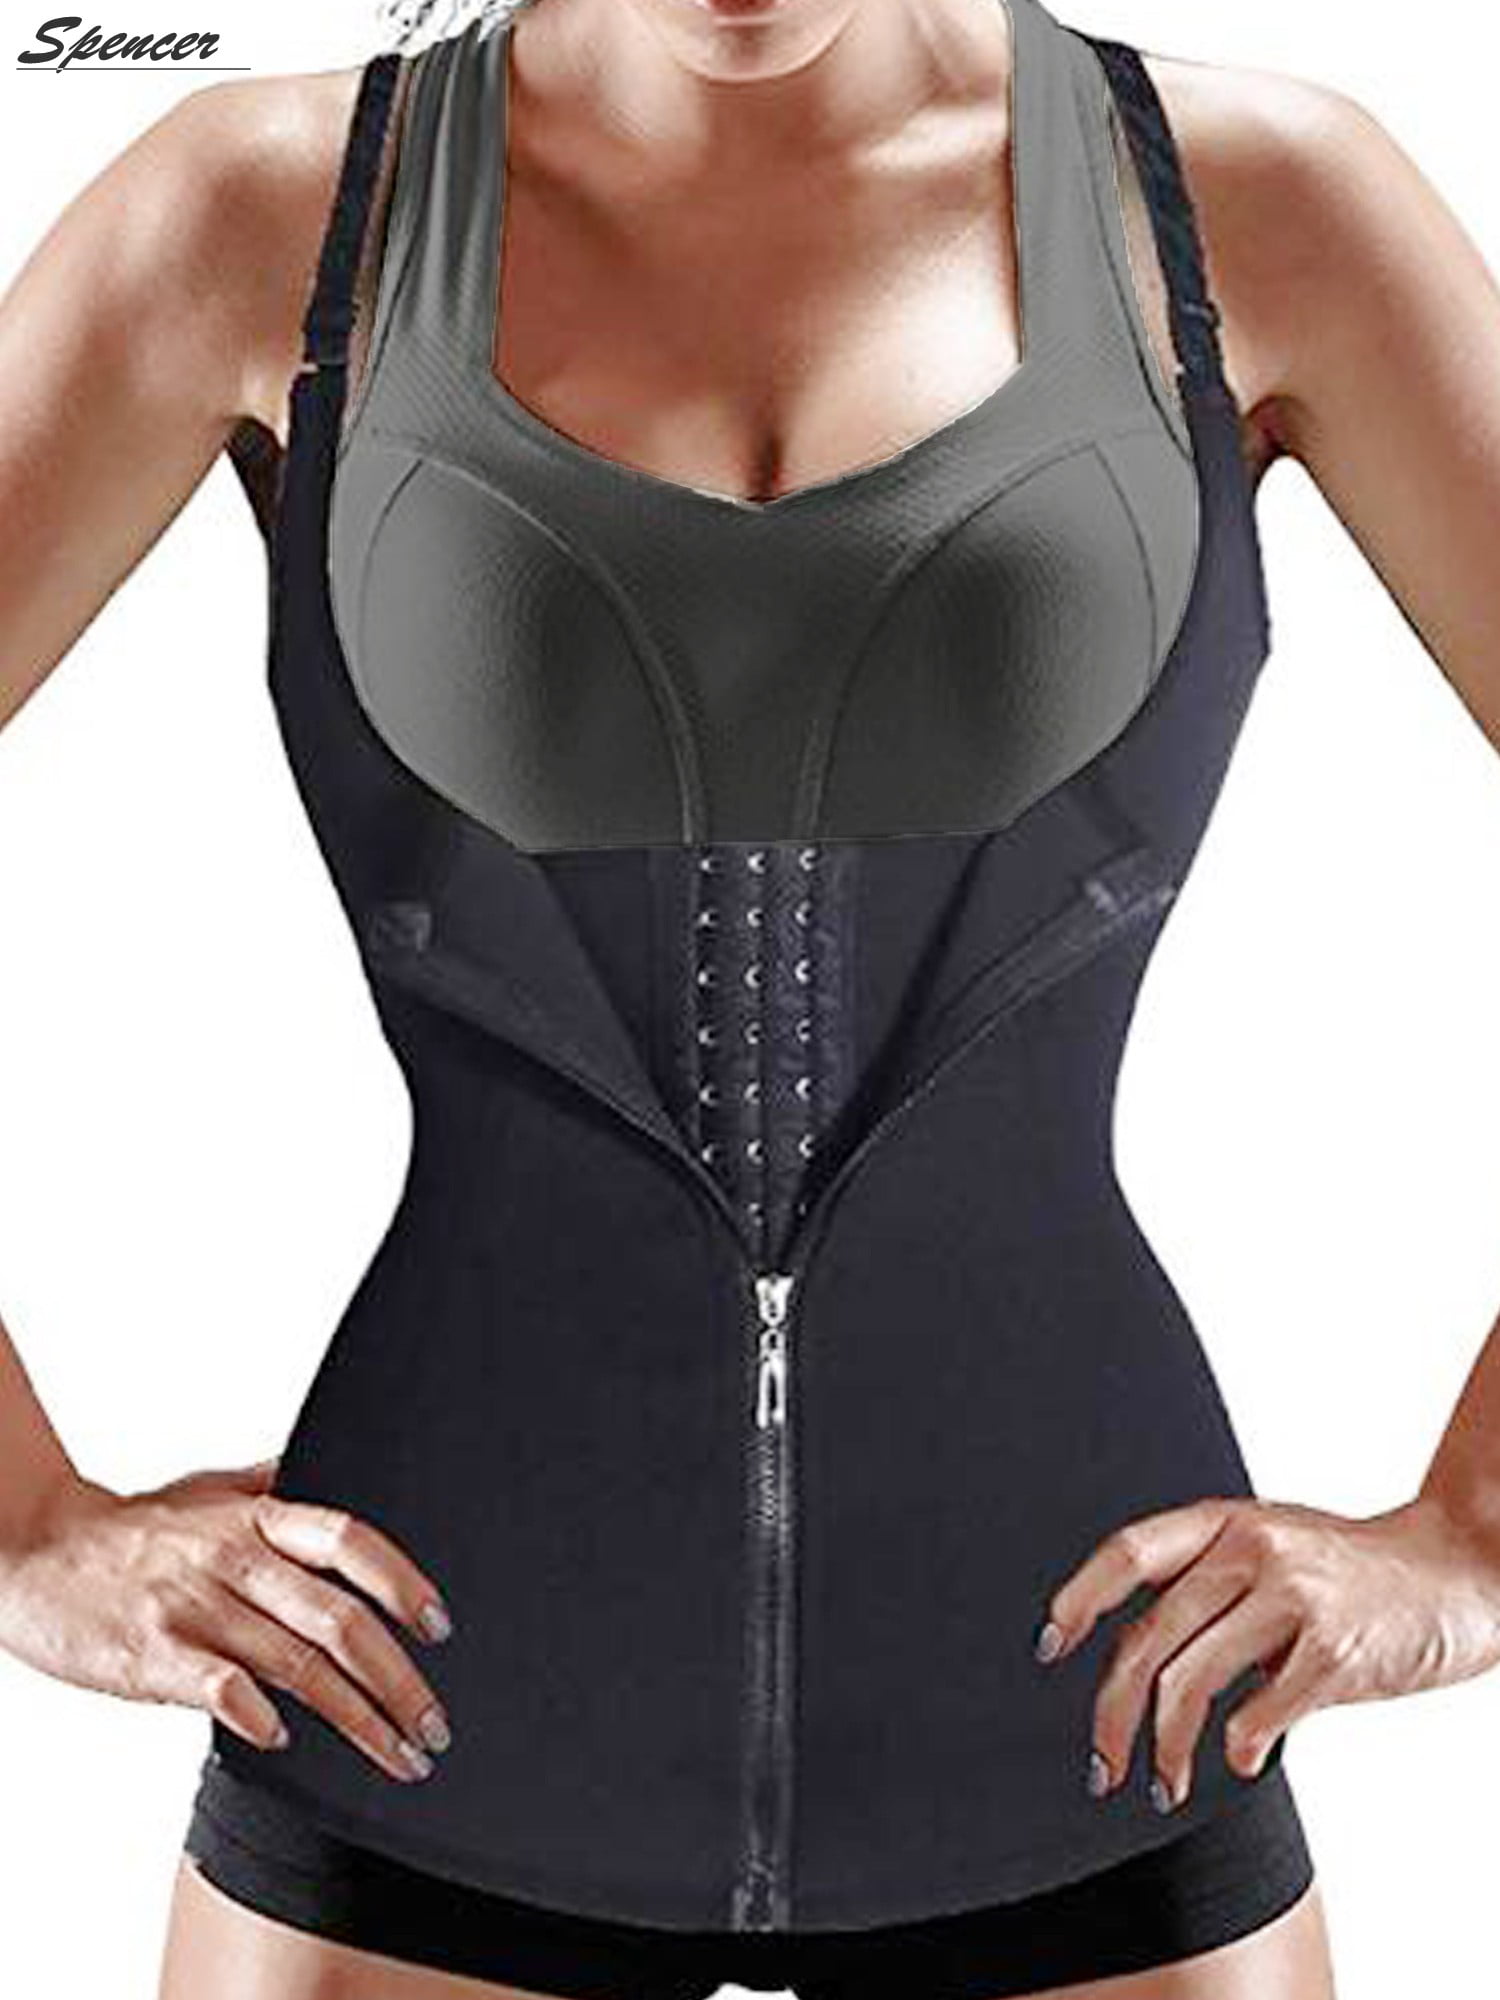 Women Sport Zip Waist Trainer Cincher Vest Body Control Shaper Slim Belt Corset 